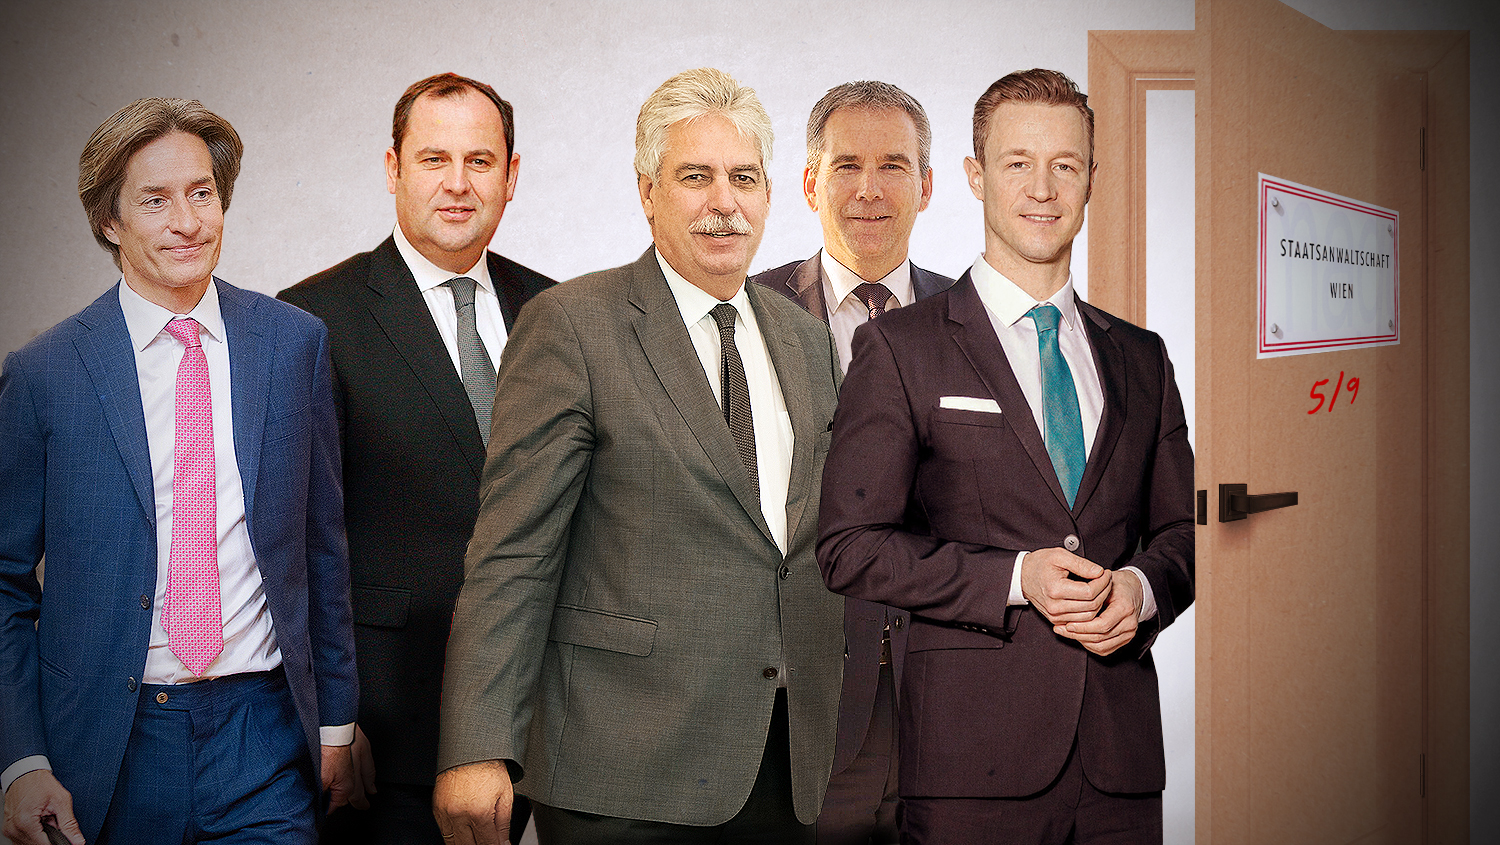 Schon 5 ÖVP-Finanzminister beschuldigt: Korruption, Postenschacher & Millionärs-Lobbying